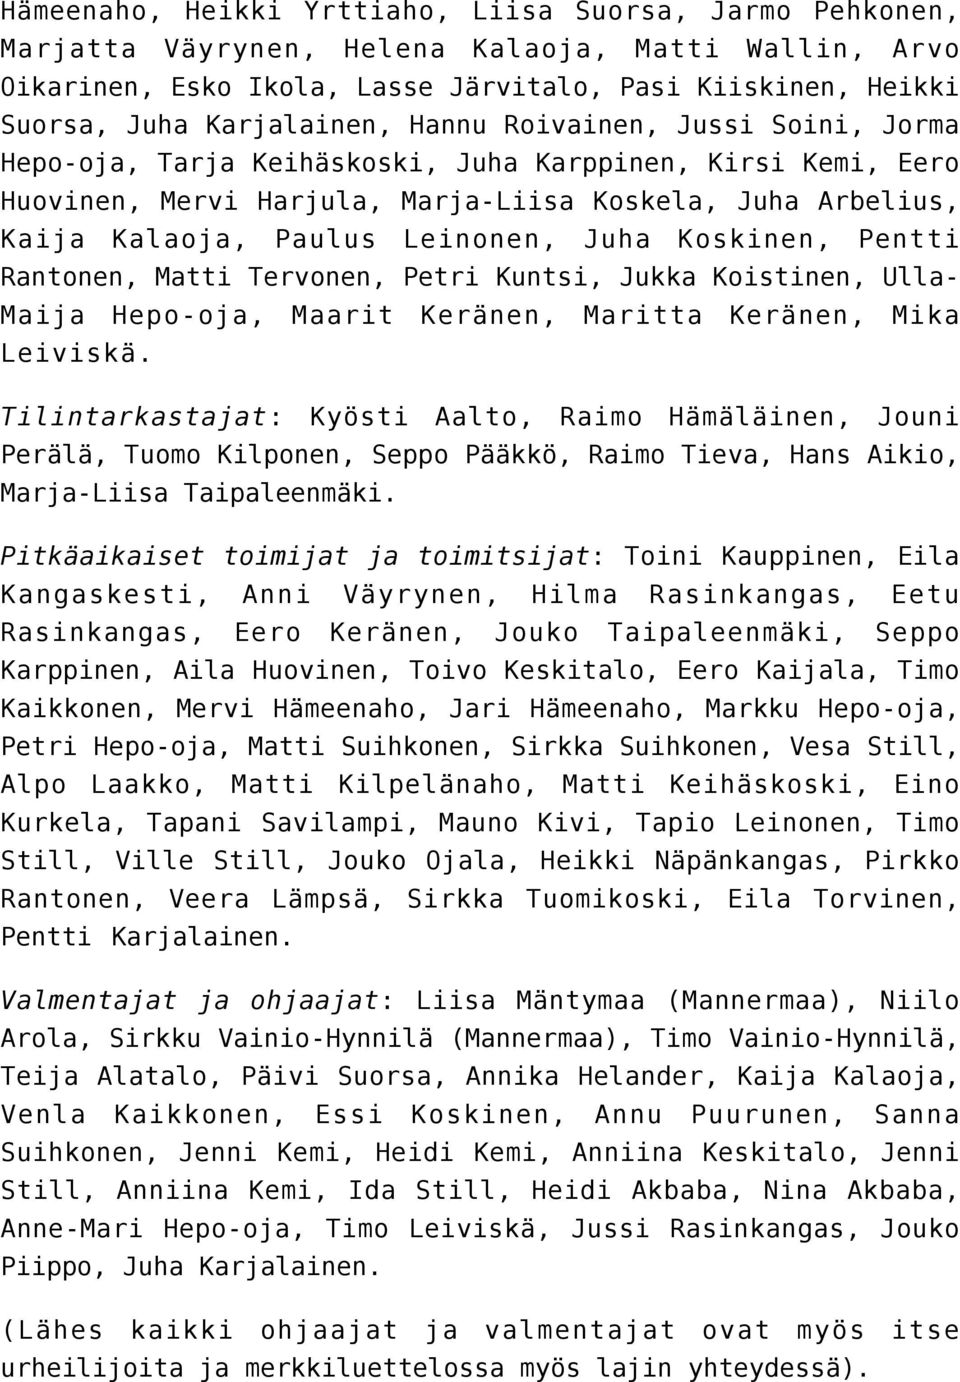 Leinonen, Juha Koskinen, Pentti Rantonen, Matti Tervonen, Petri Kuntsi, Jukka Koistinen, Ulla- Maija Hepo-oja, Maarit Keränen, Maritta Keränen, Mika Leiviskä.